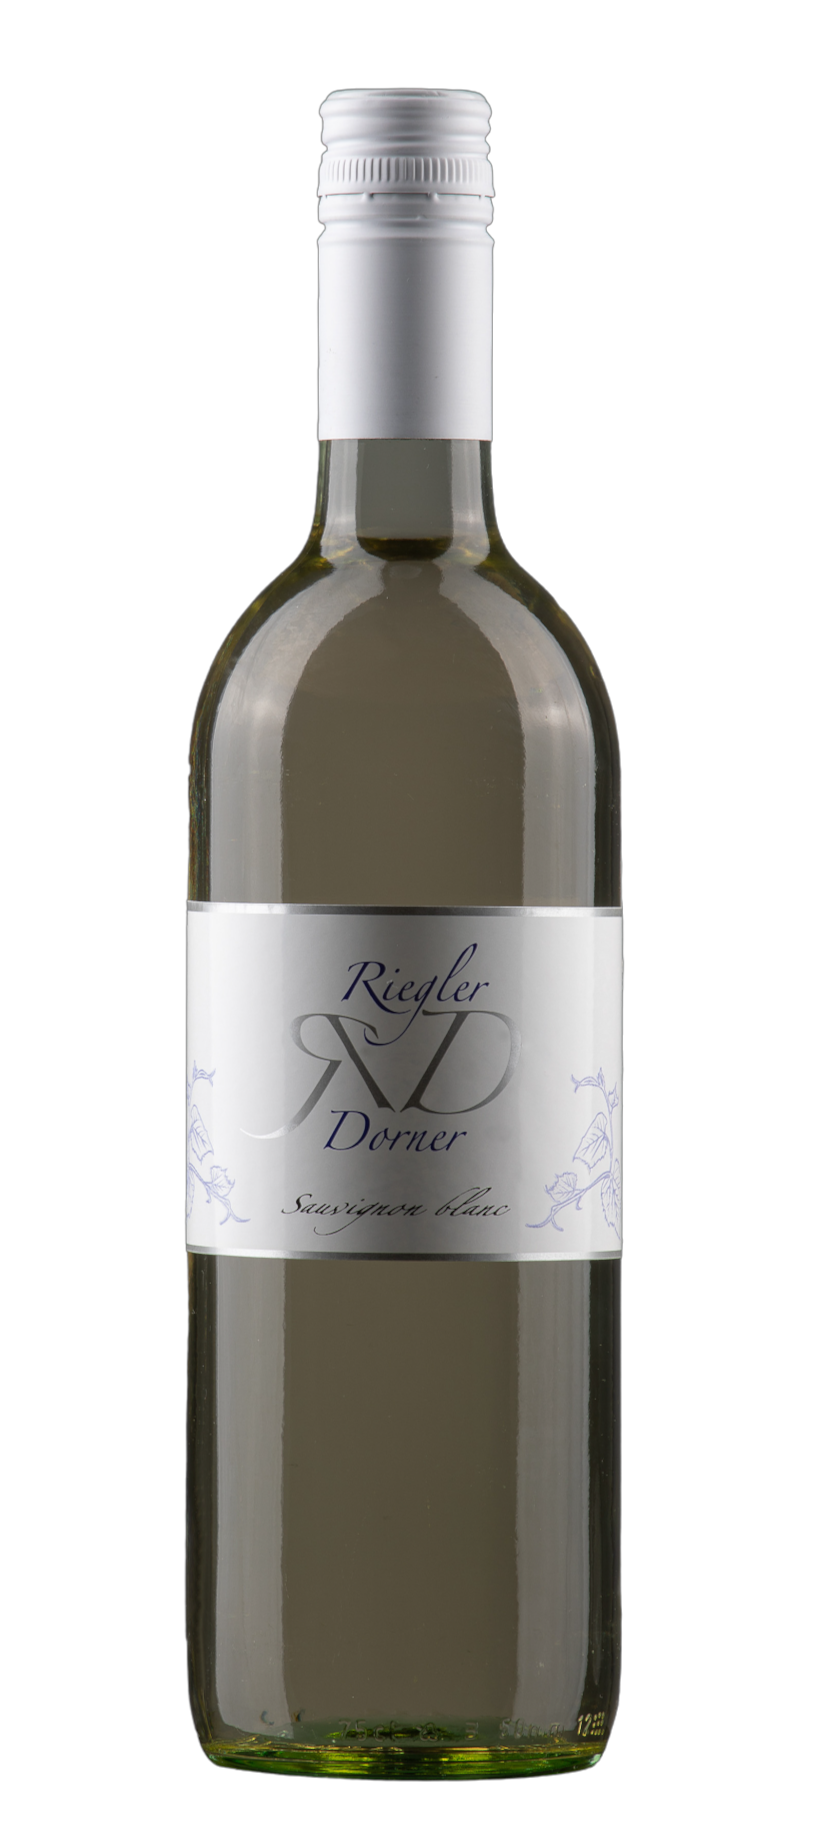 Weinbau Riegler-Dorner Produkt-Beispiele Sauvignon blanc